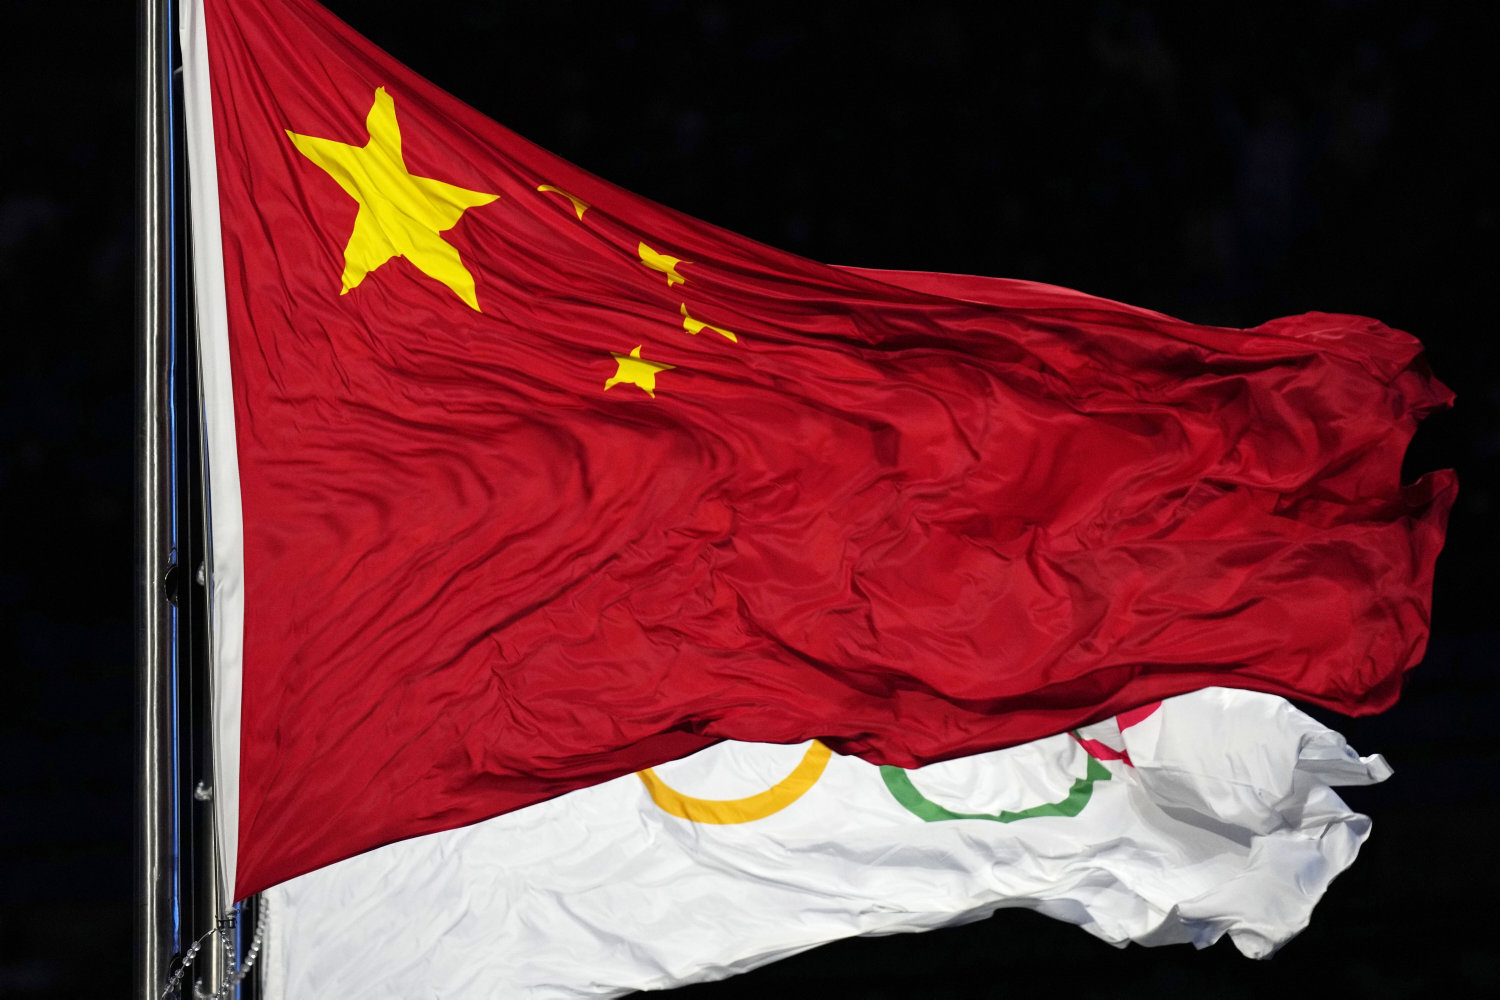 wada købte kinas køkken-forklaring i dopingsag